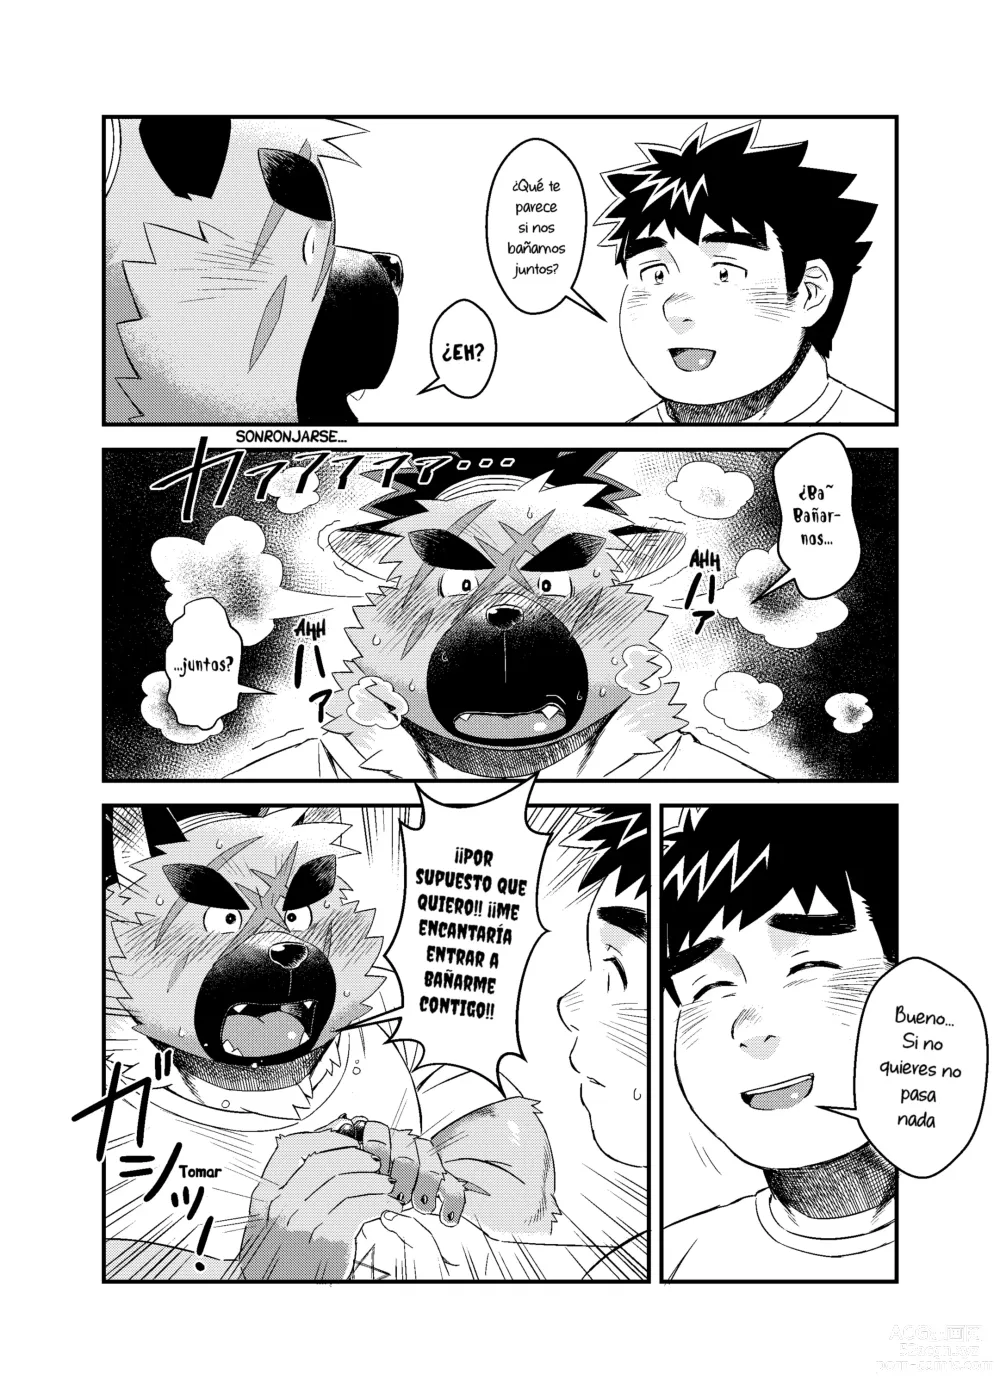 Page 8 of doujinshi Aquella vez que tomé la medicina incorrecta cuando estaba de visita en la casa del Comandante.